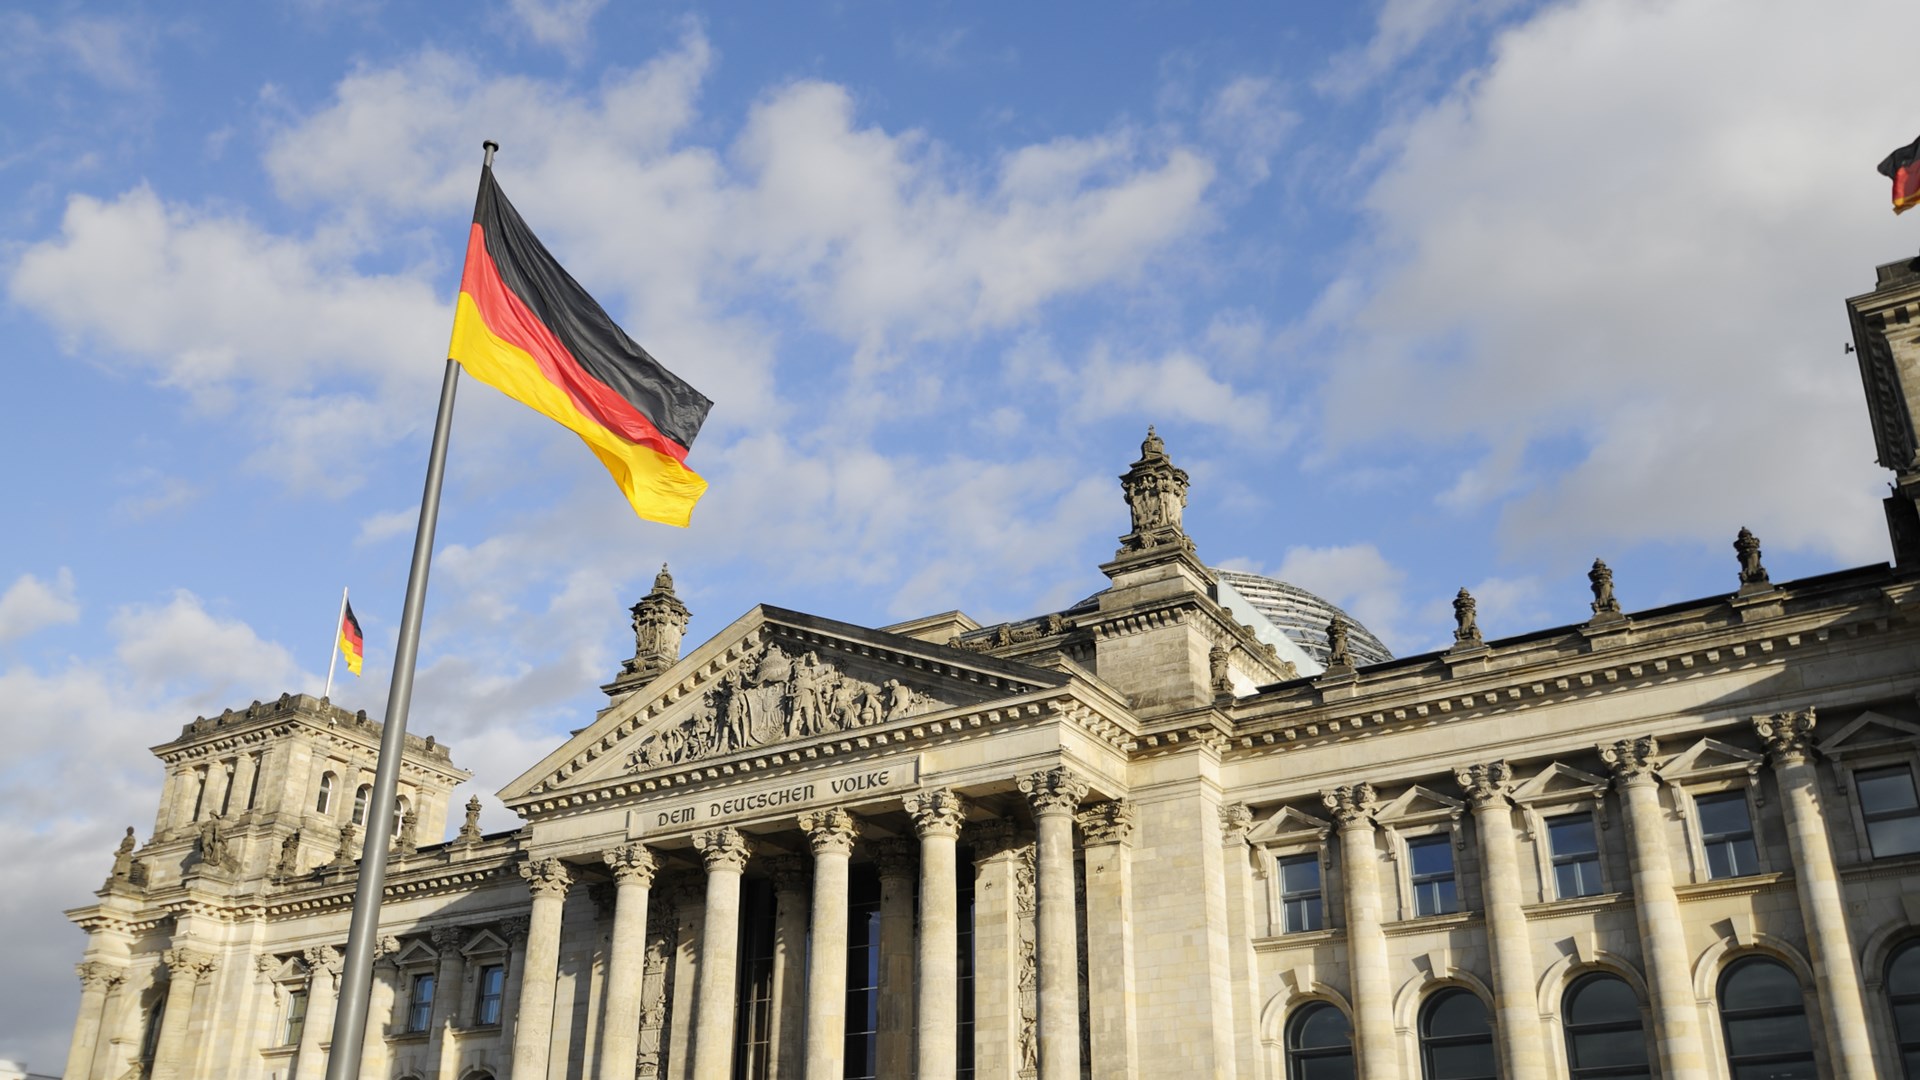 Δημοσιονομικό κενό «βλέπει» το Βερολίνο και ζητεί νέα μέτρα